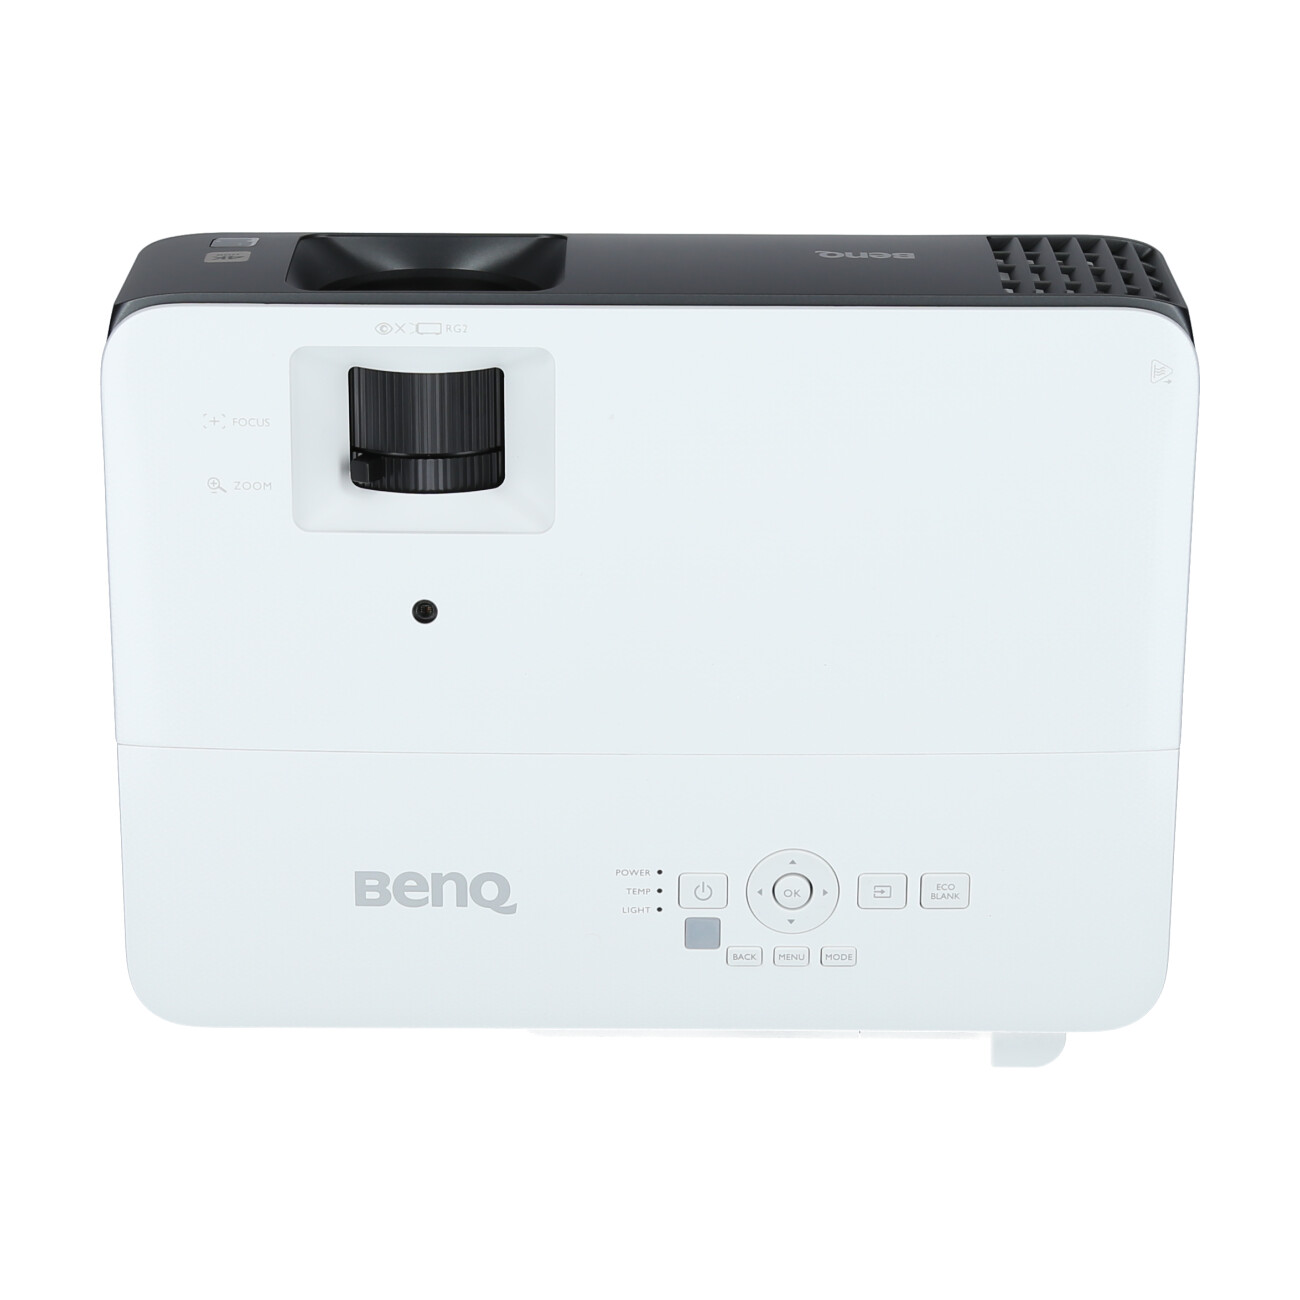 BenQ-TK700-Gaming-Beamer-4K-UHD-3000-ANSI-Lumen-HDMI-USB